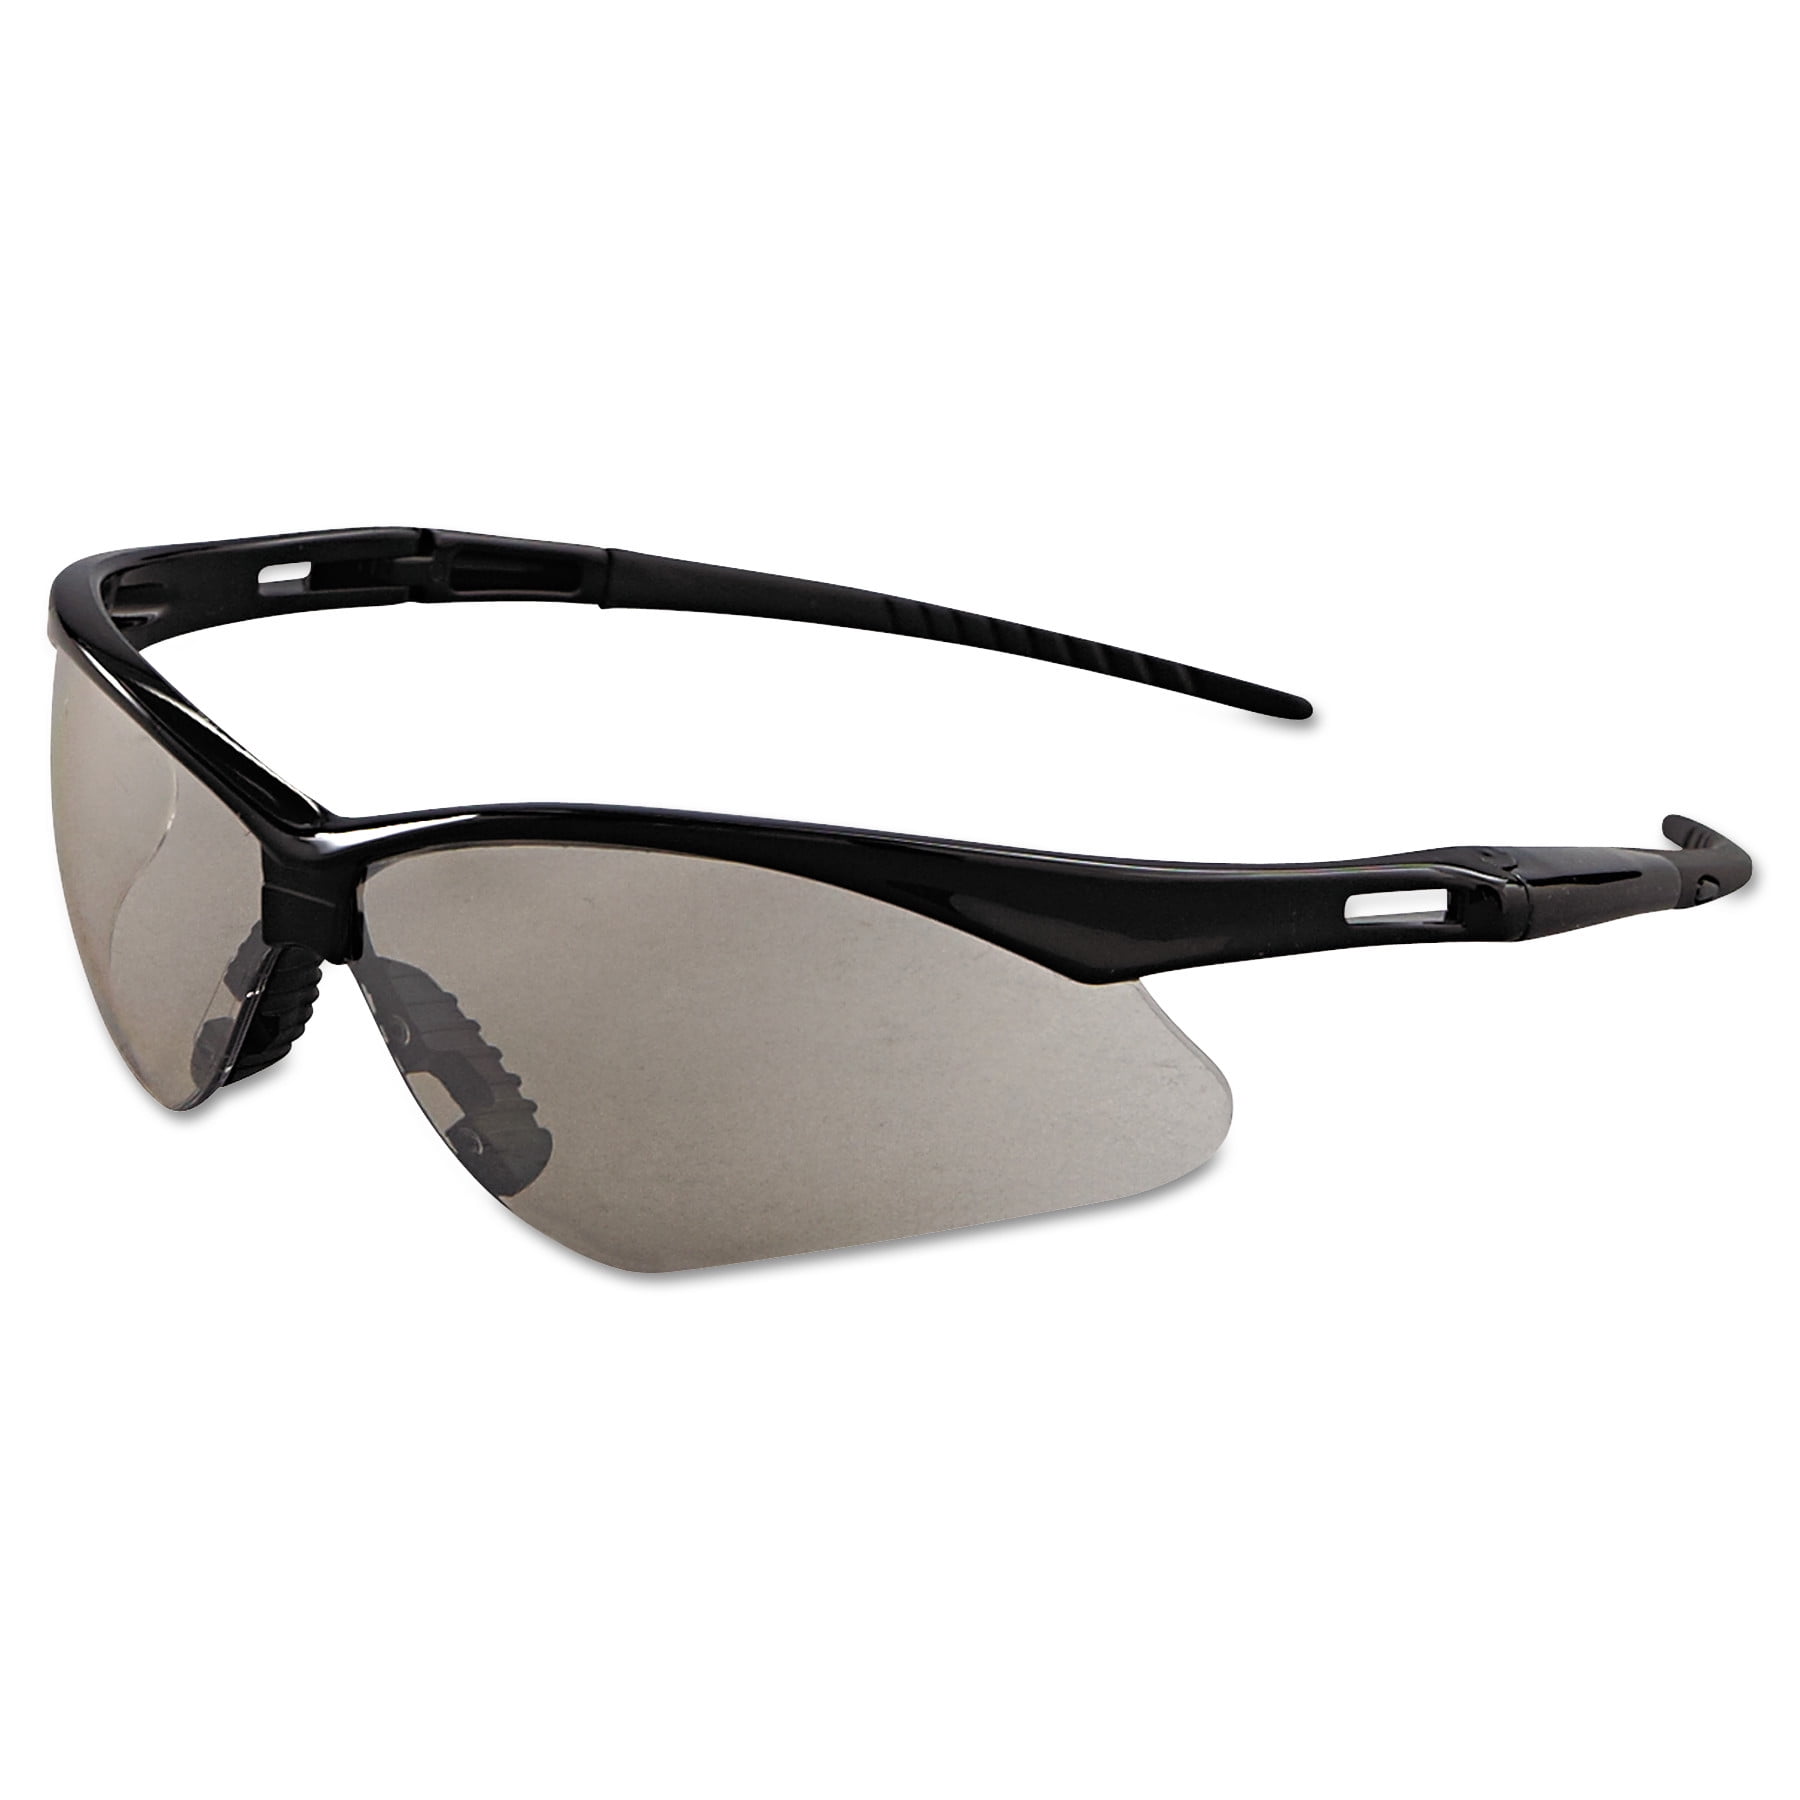 Kleenguard Formerly Jackson Safety V30 Nemesis Safety Glasses 25685 Indoor Per Outdoor Lens